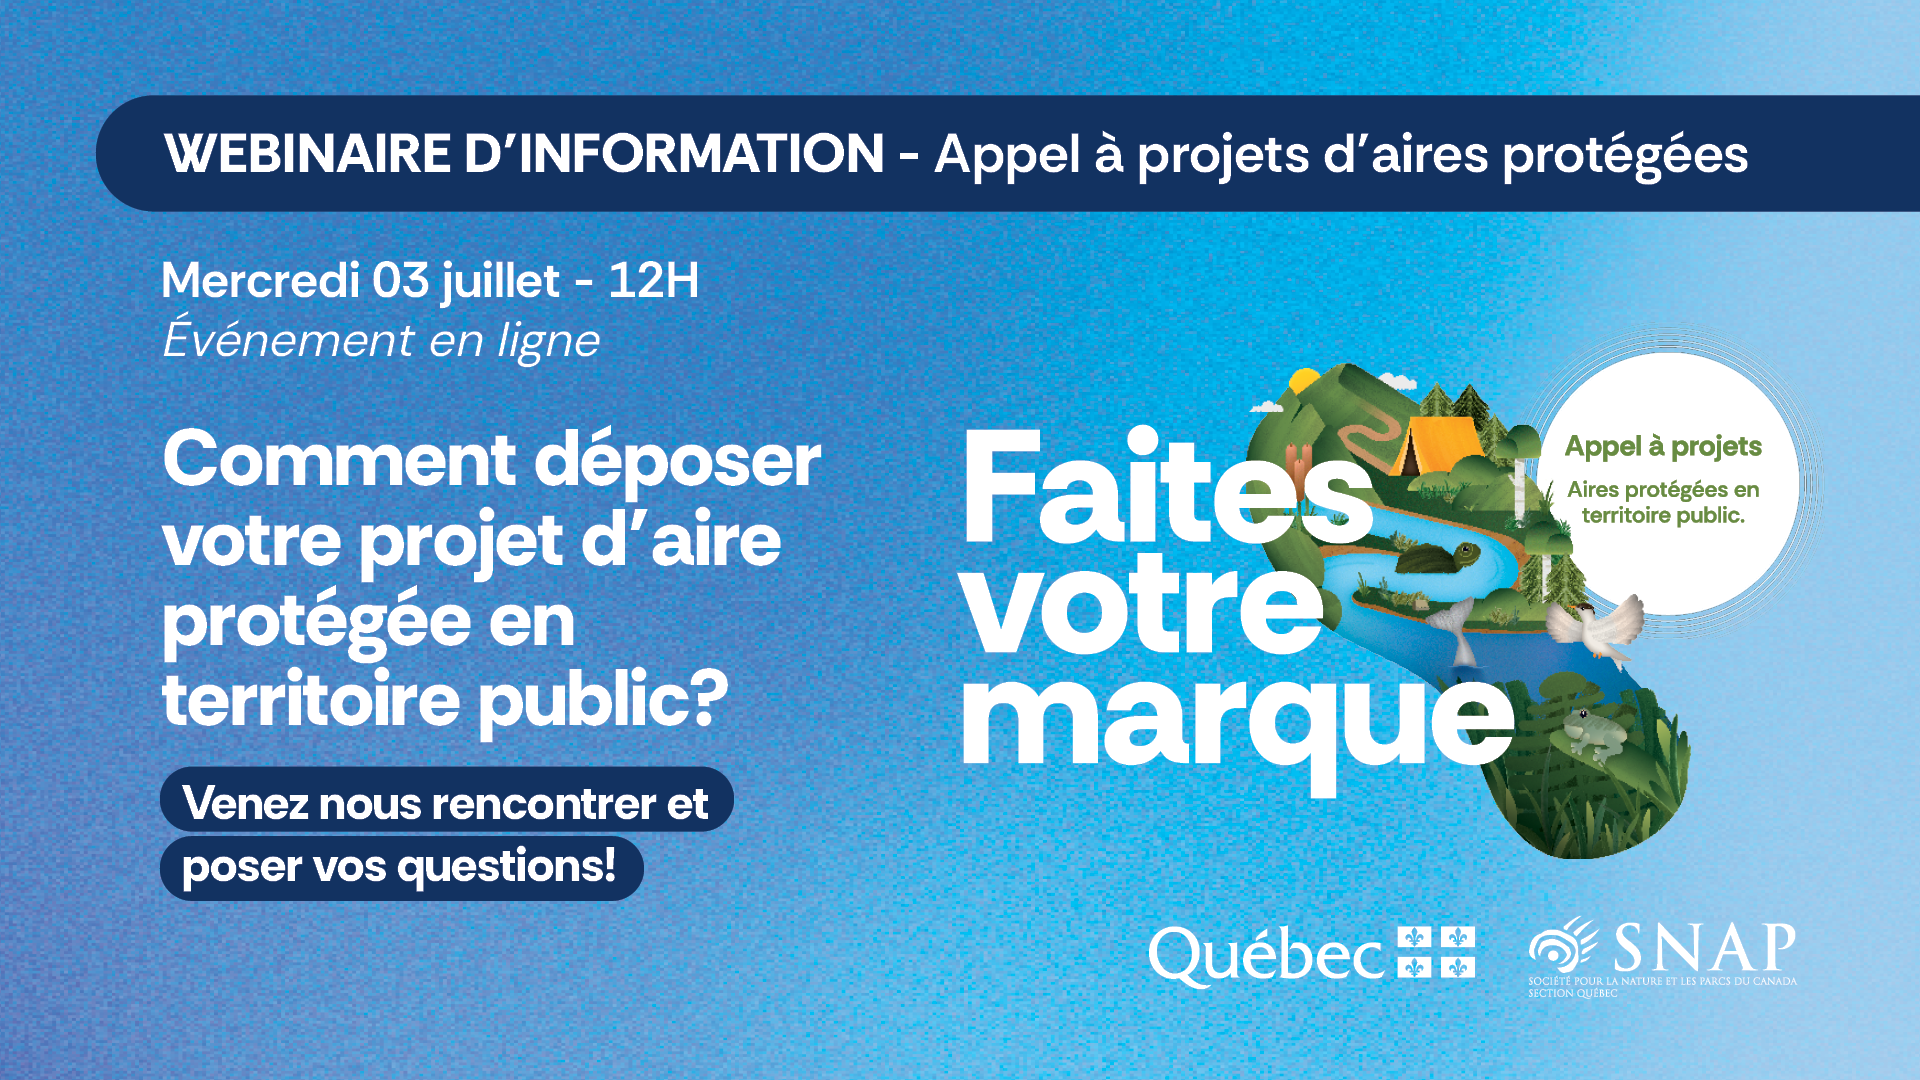 Featured image for “Webinaire d’information: Appel à projets d’aires protégées”